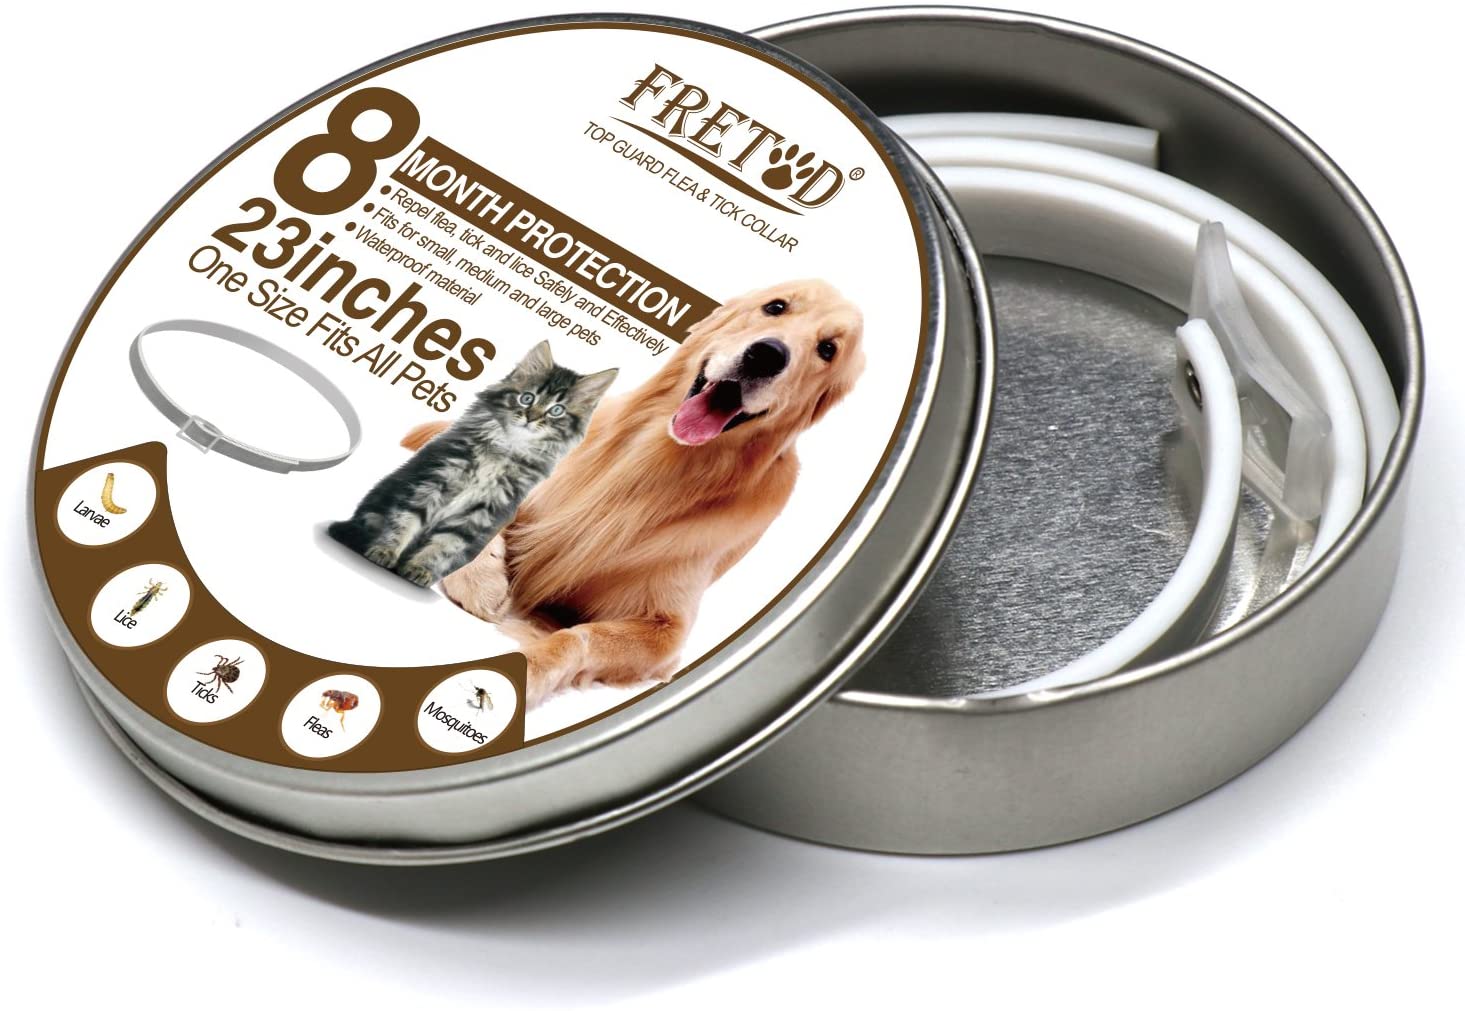  FRETOD Collares Antiparasitario para Perros y Gatos – 65cm Collares Antipulgas y Garrapatas para Perros Pequeño Mediano Grandes 